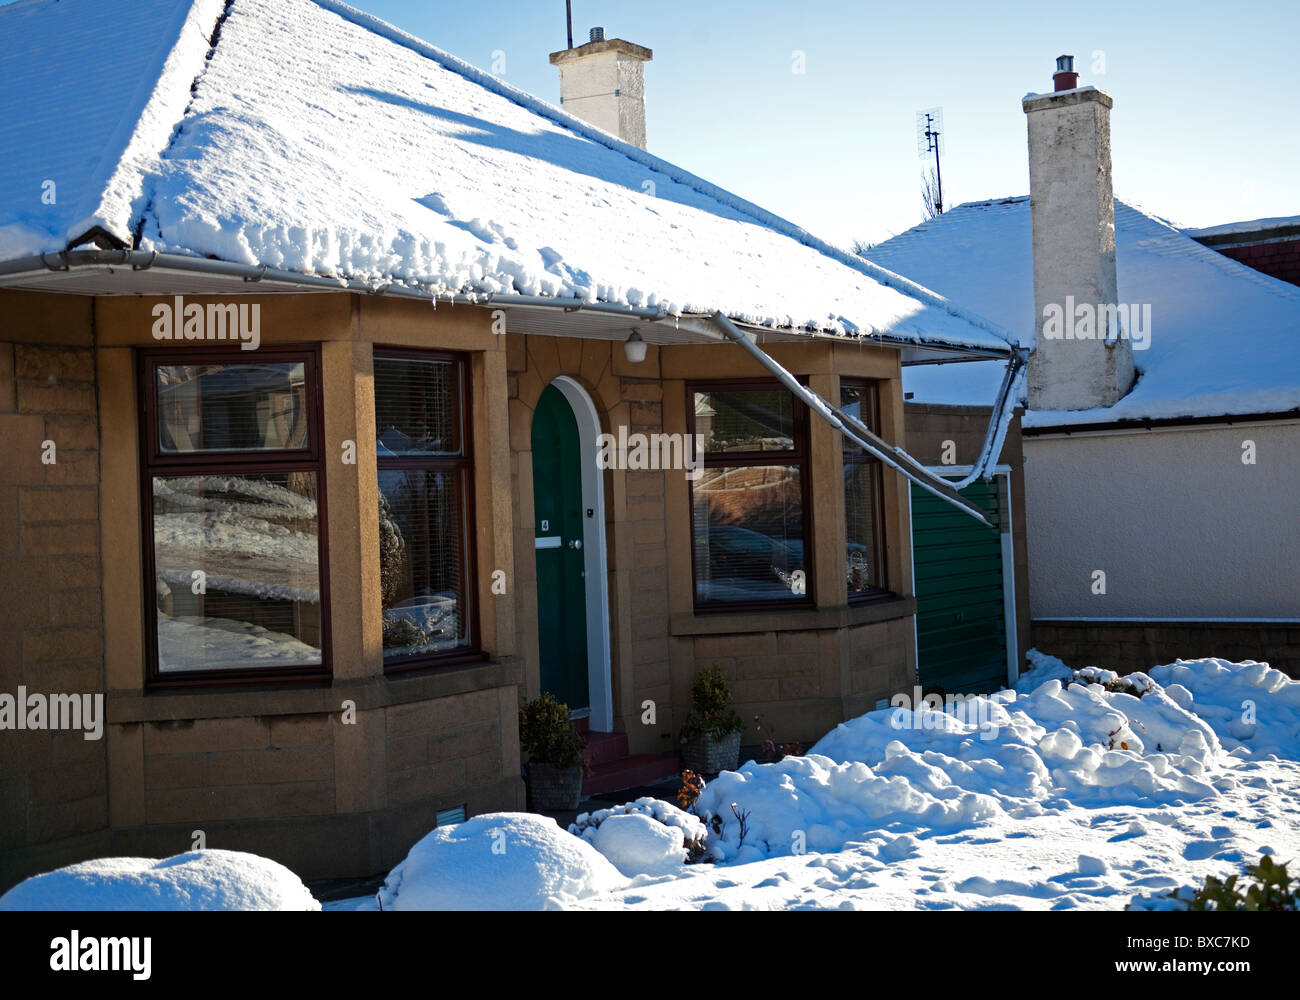 Daños en el invierno, la nieve, el techo derrumbado canalones debido a las condiciones climáticas de hielo Foto de stock